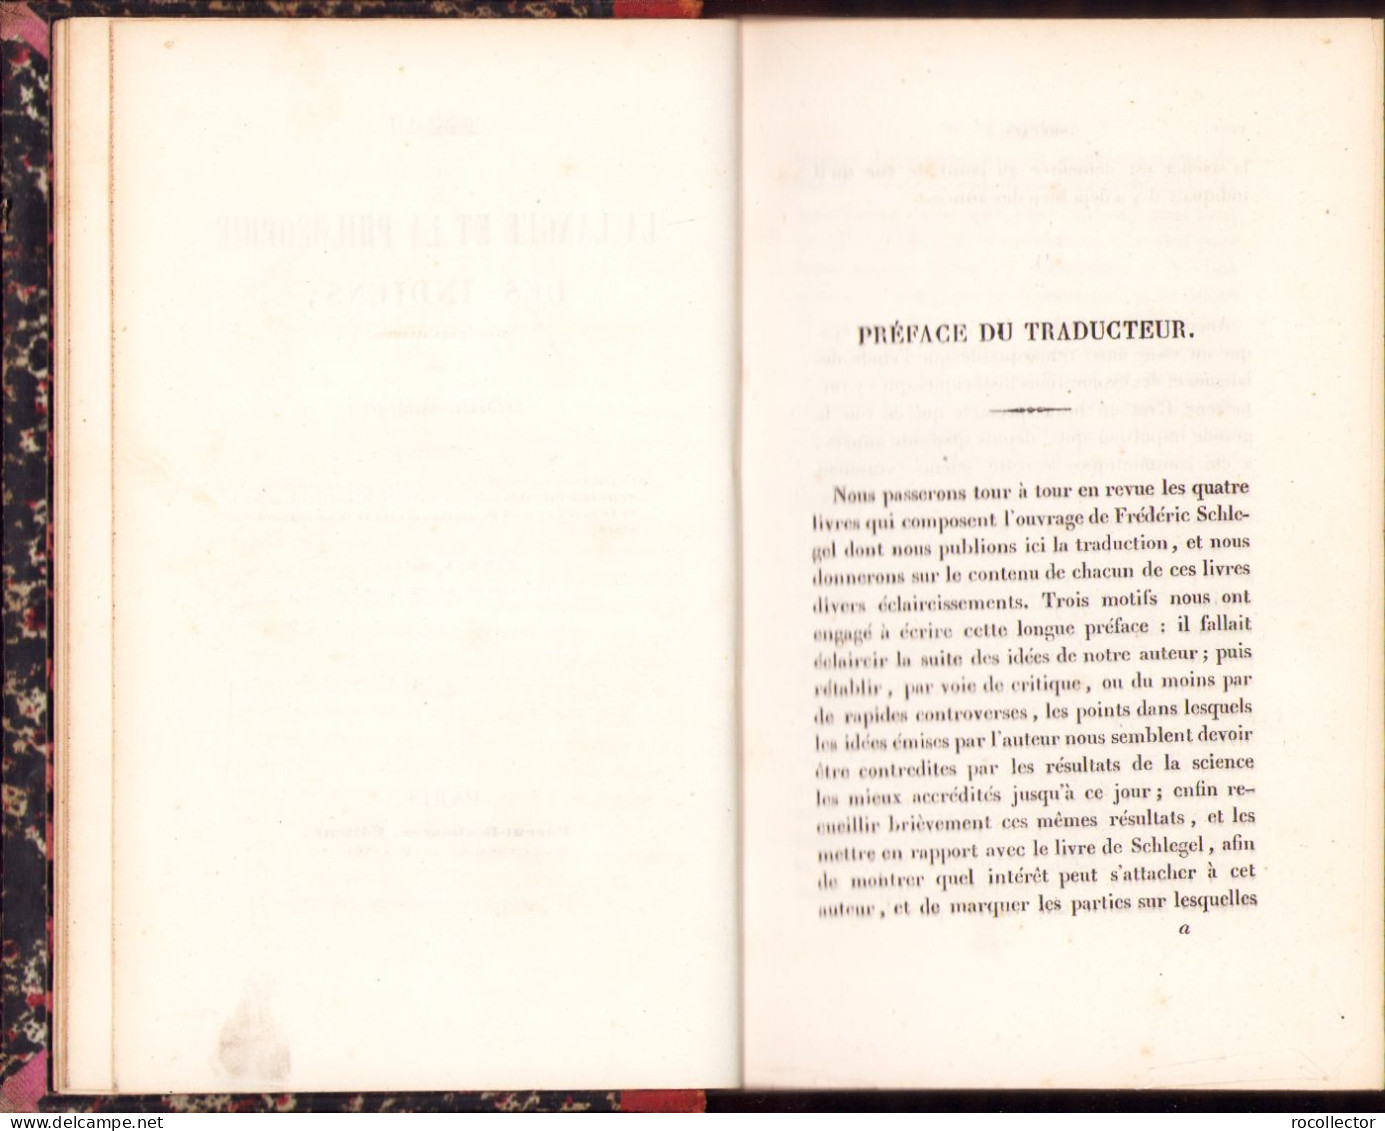 Essai Sur La Langue Et La Philosophie Des Indiens Traduit De L’allemand Par Frederic Schlegel, 1837 402SP - Old Books